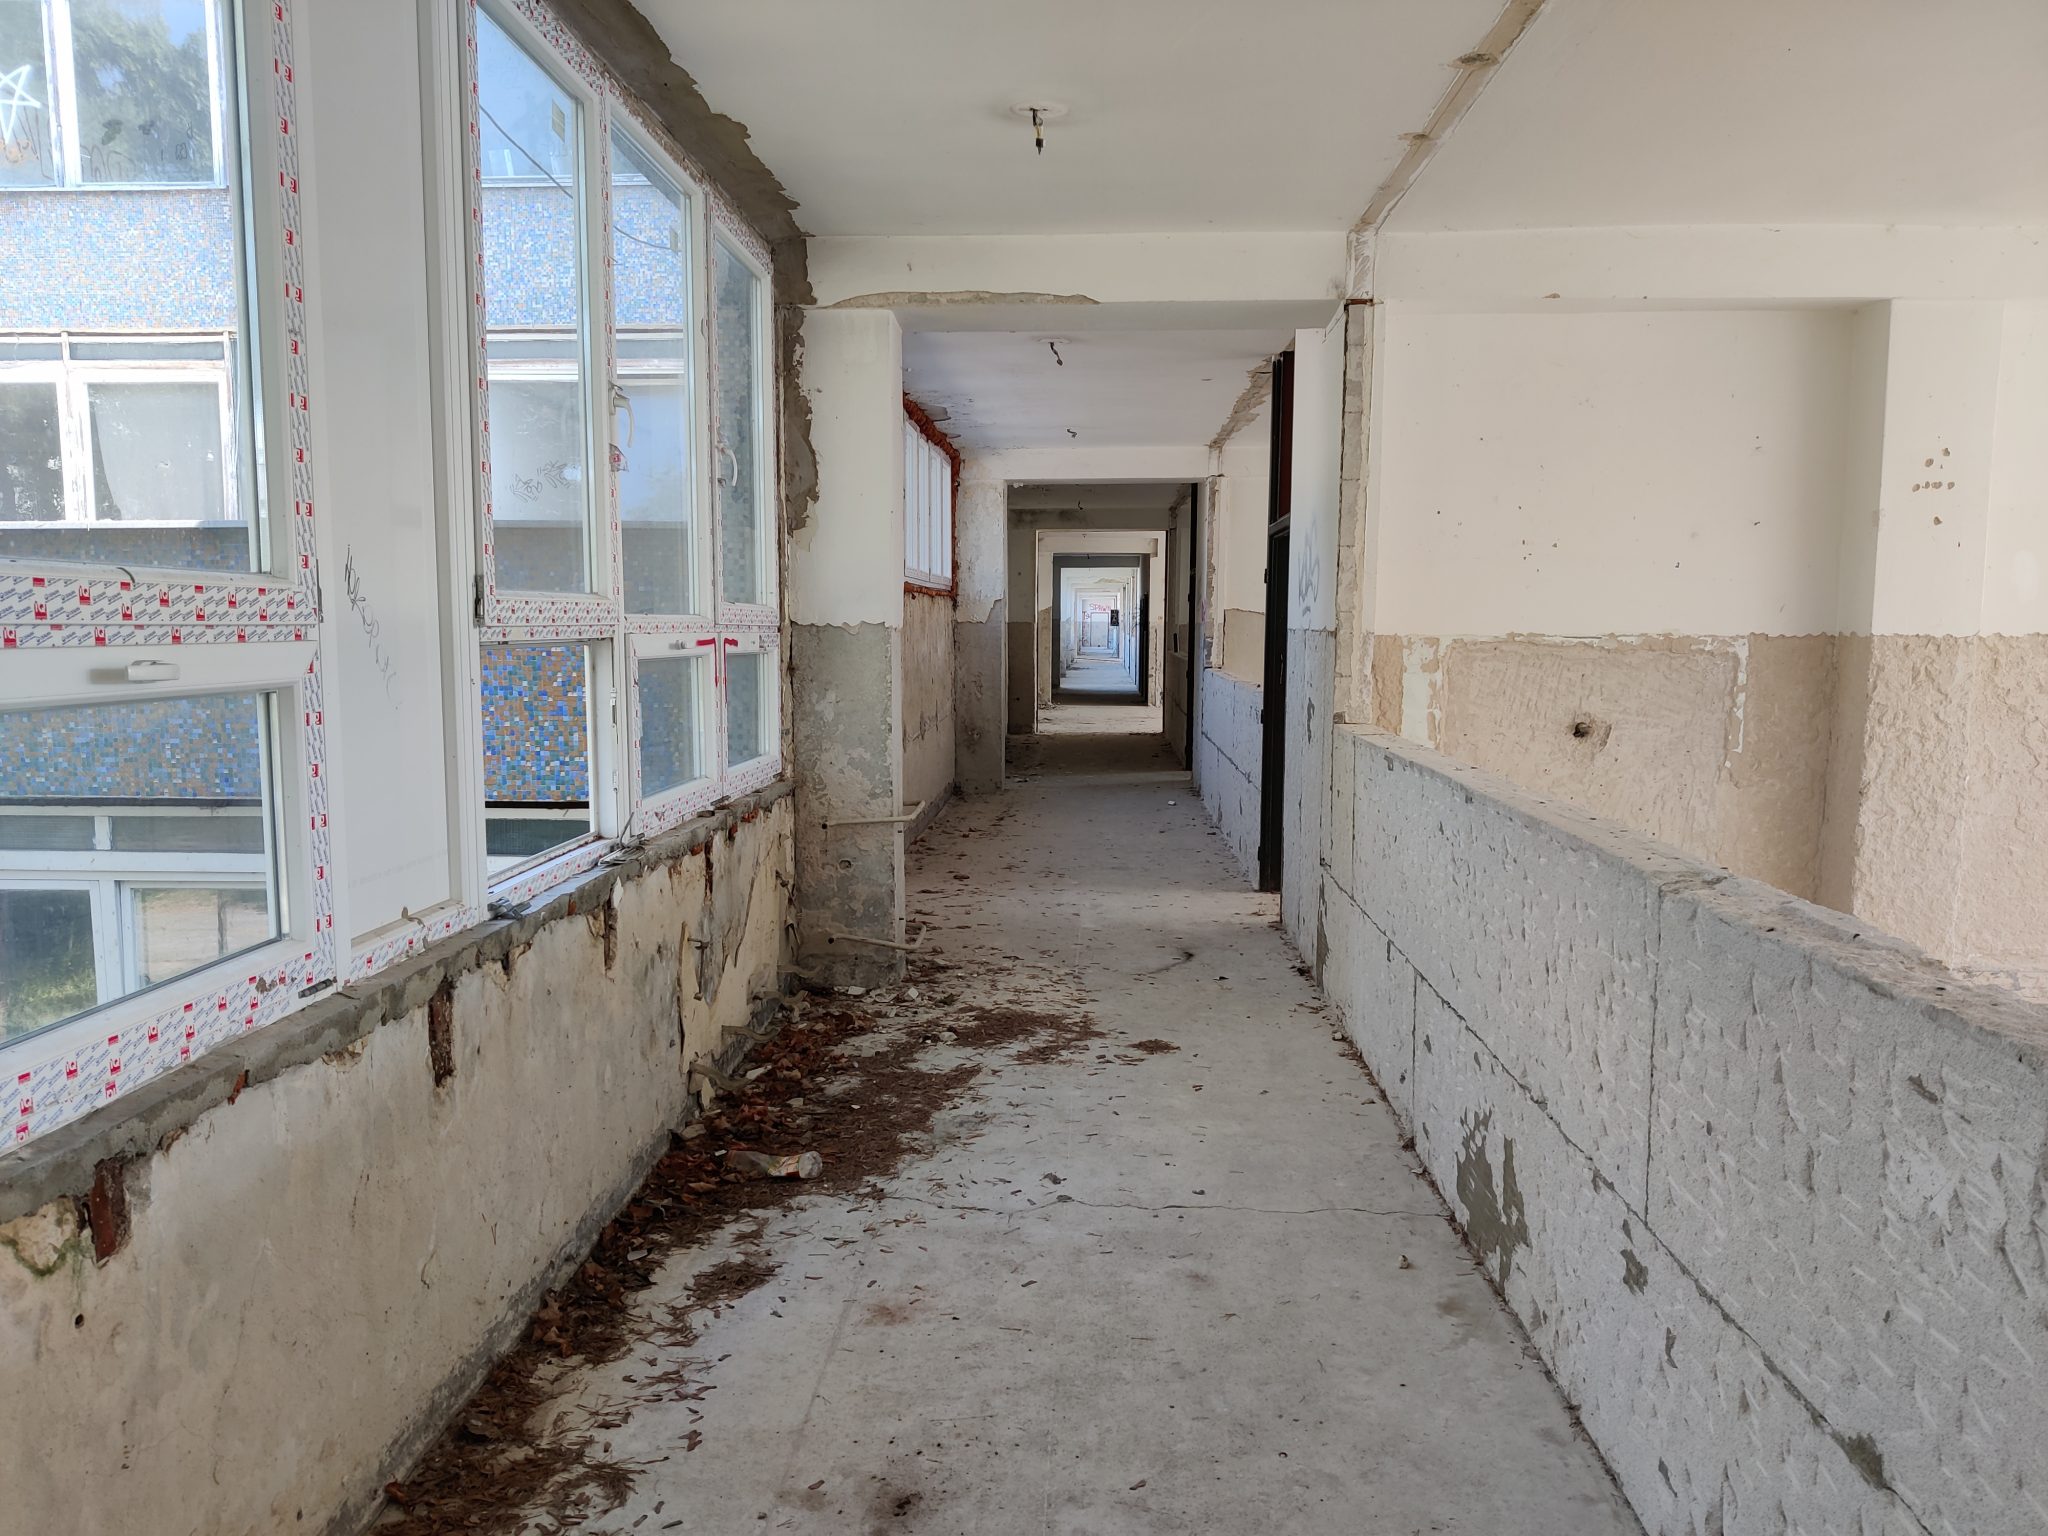 Ruinózny stav školy pred rekonštrukciou